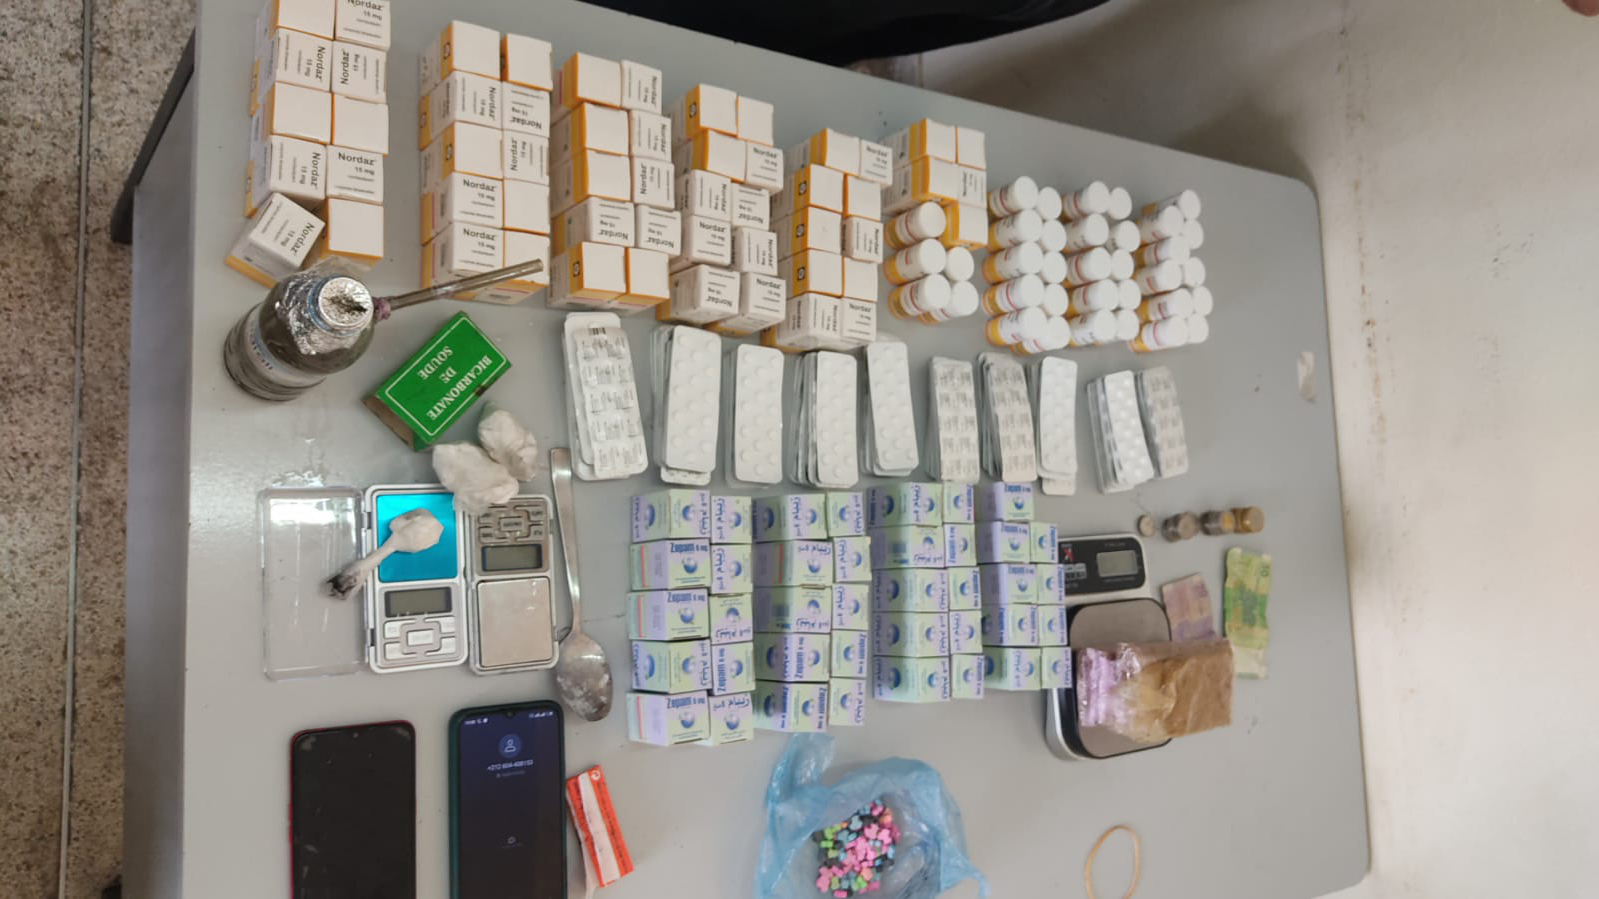 L’opération de perquisition menée au domicile d'un suspect a abouti à la saisie de 5.437 comprimés de psychotropes (2.700 comprimés du Nordoz, 1.485 comprimés de Rivotril, 1.170 comprimés de Zépam et 82 comprimés d’Ecstasy).
